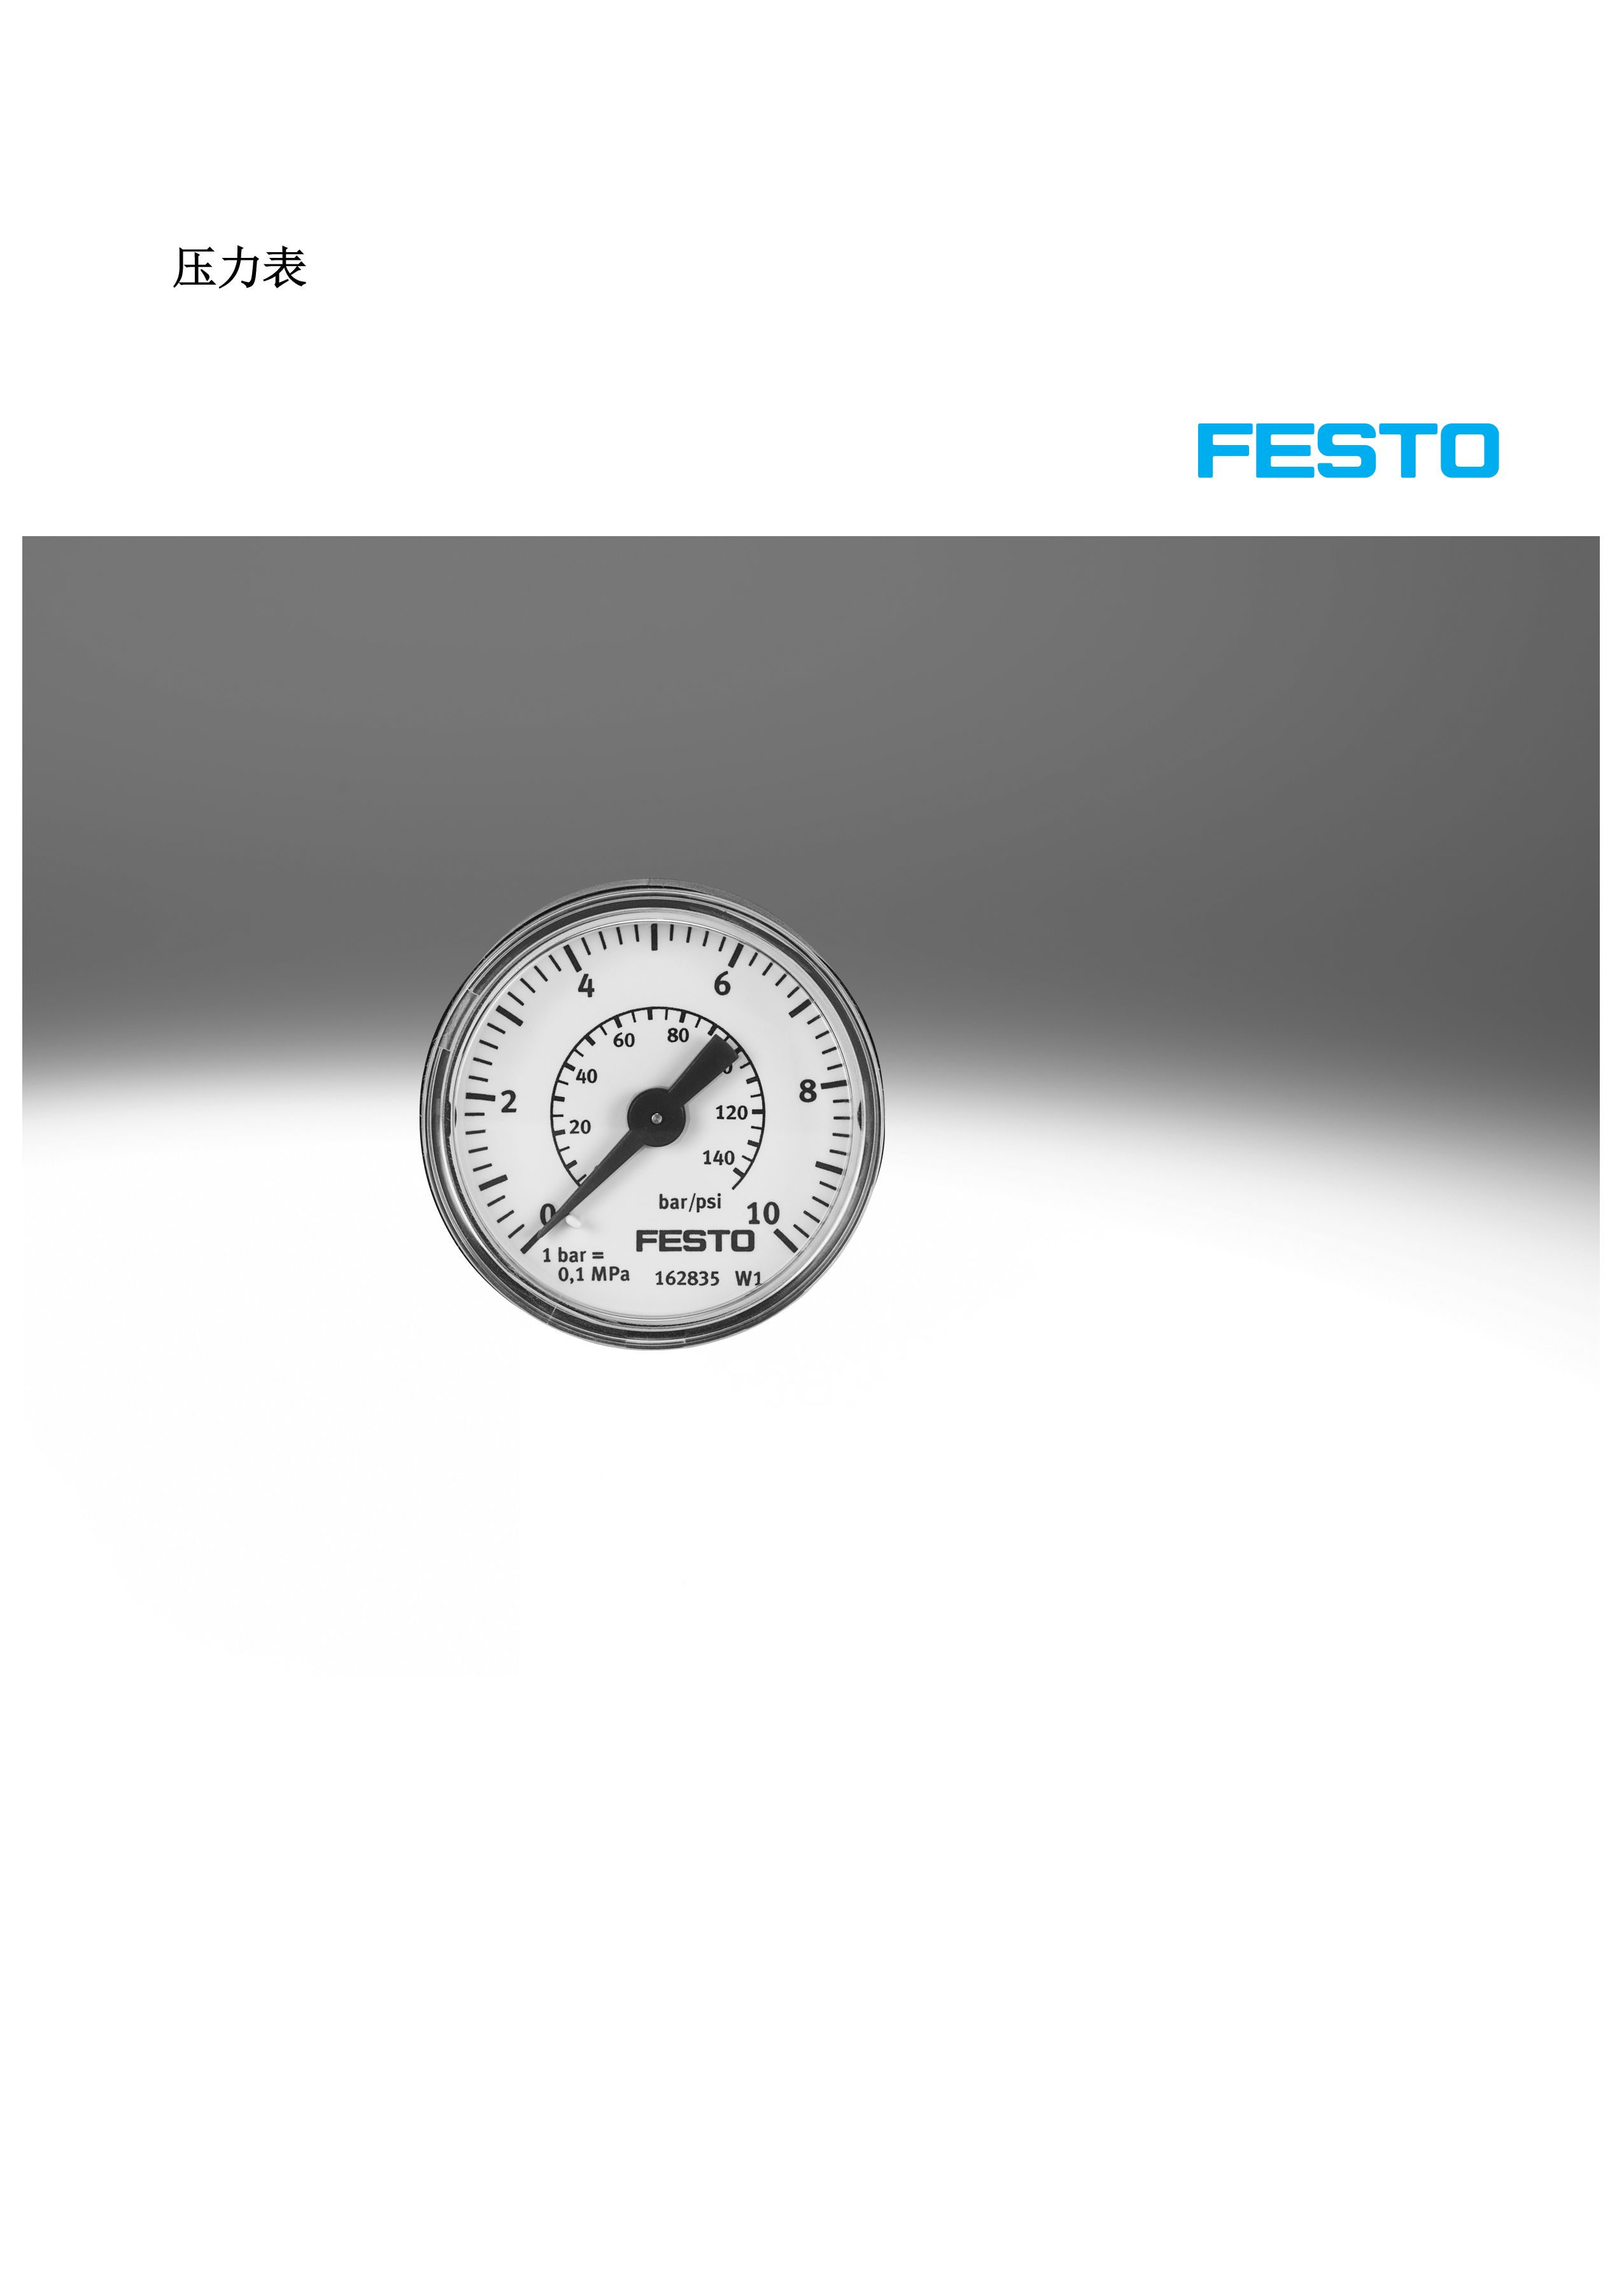 Festo MA压力表(图1)